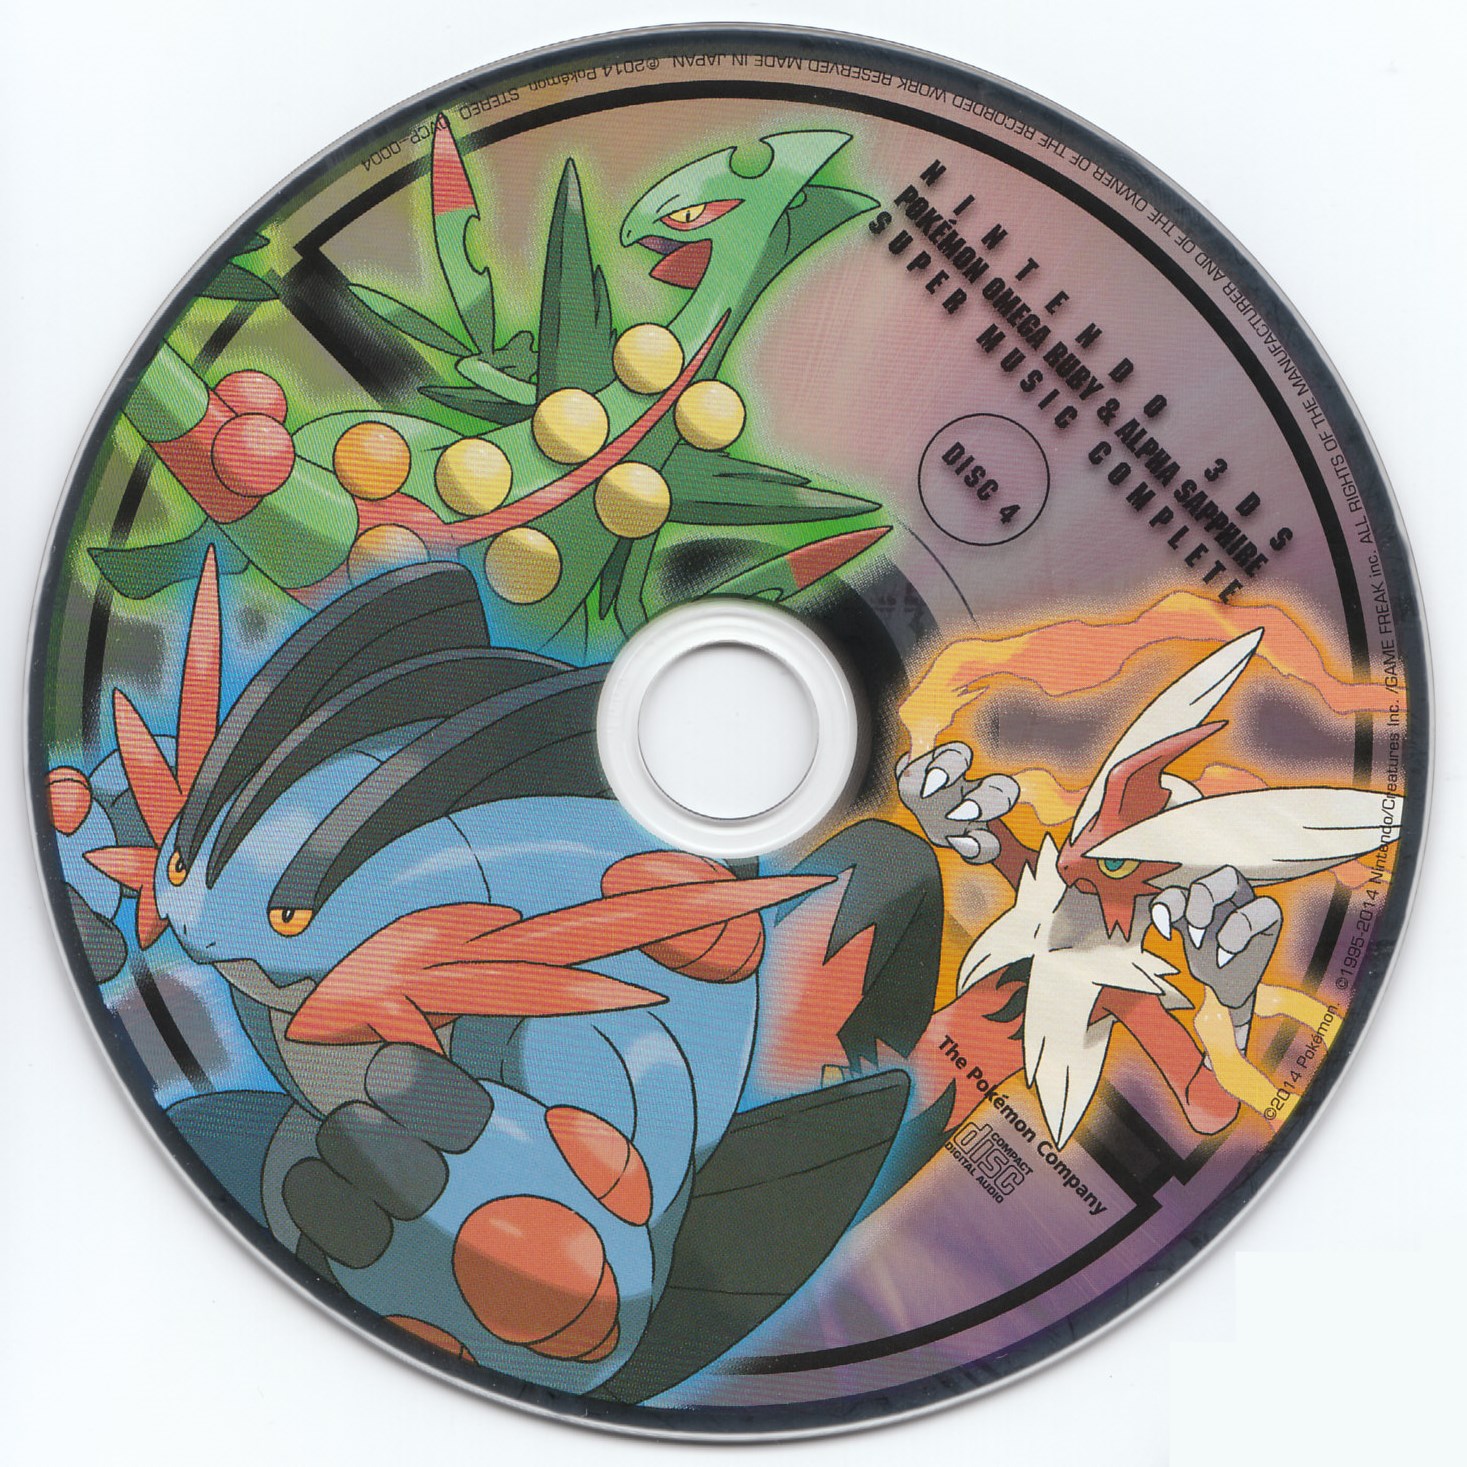 Como fazer download de Pokémon Omega Ruby e Alpha Sapphire no 3DS